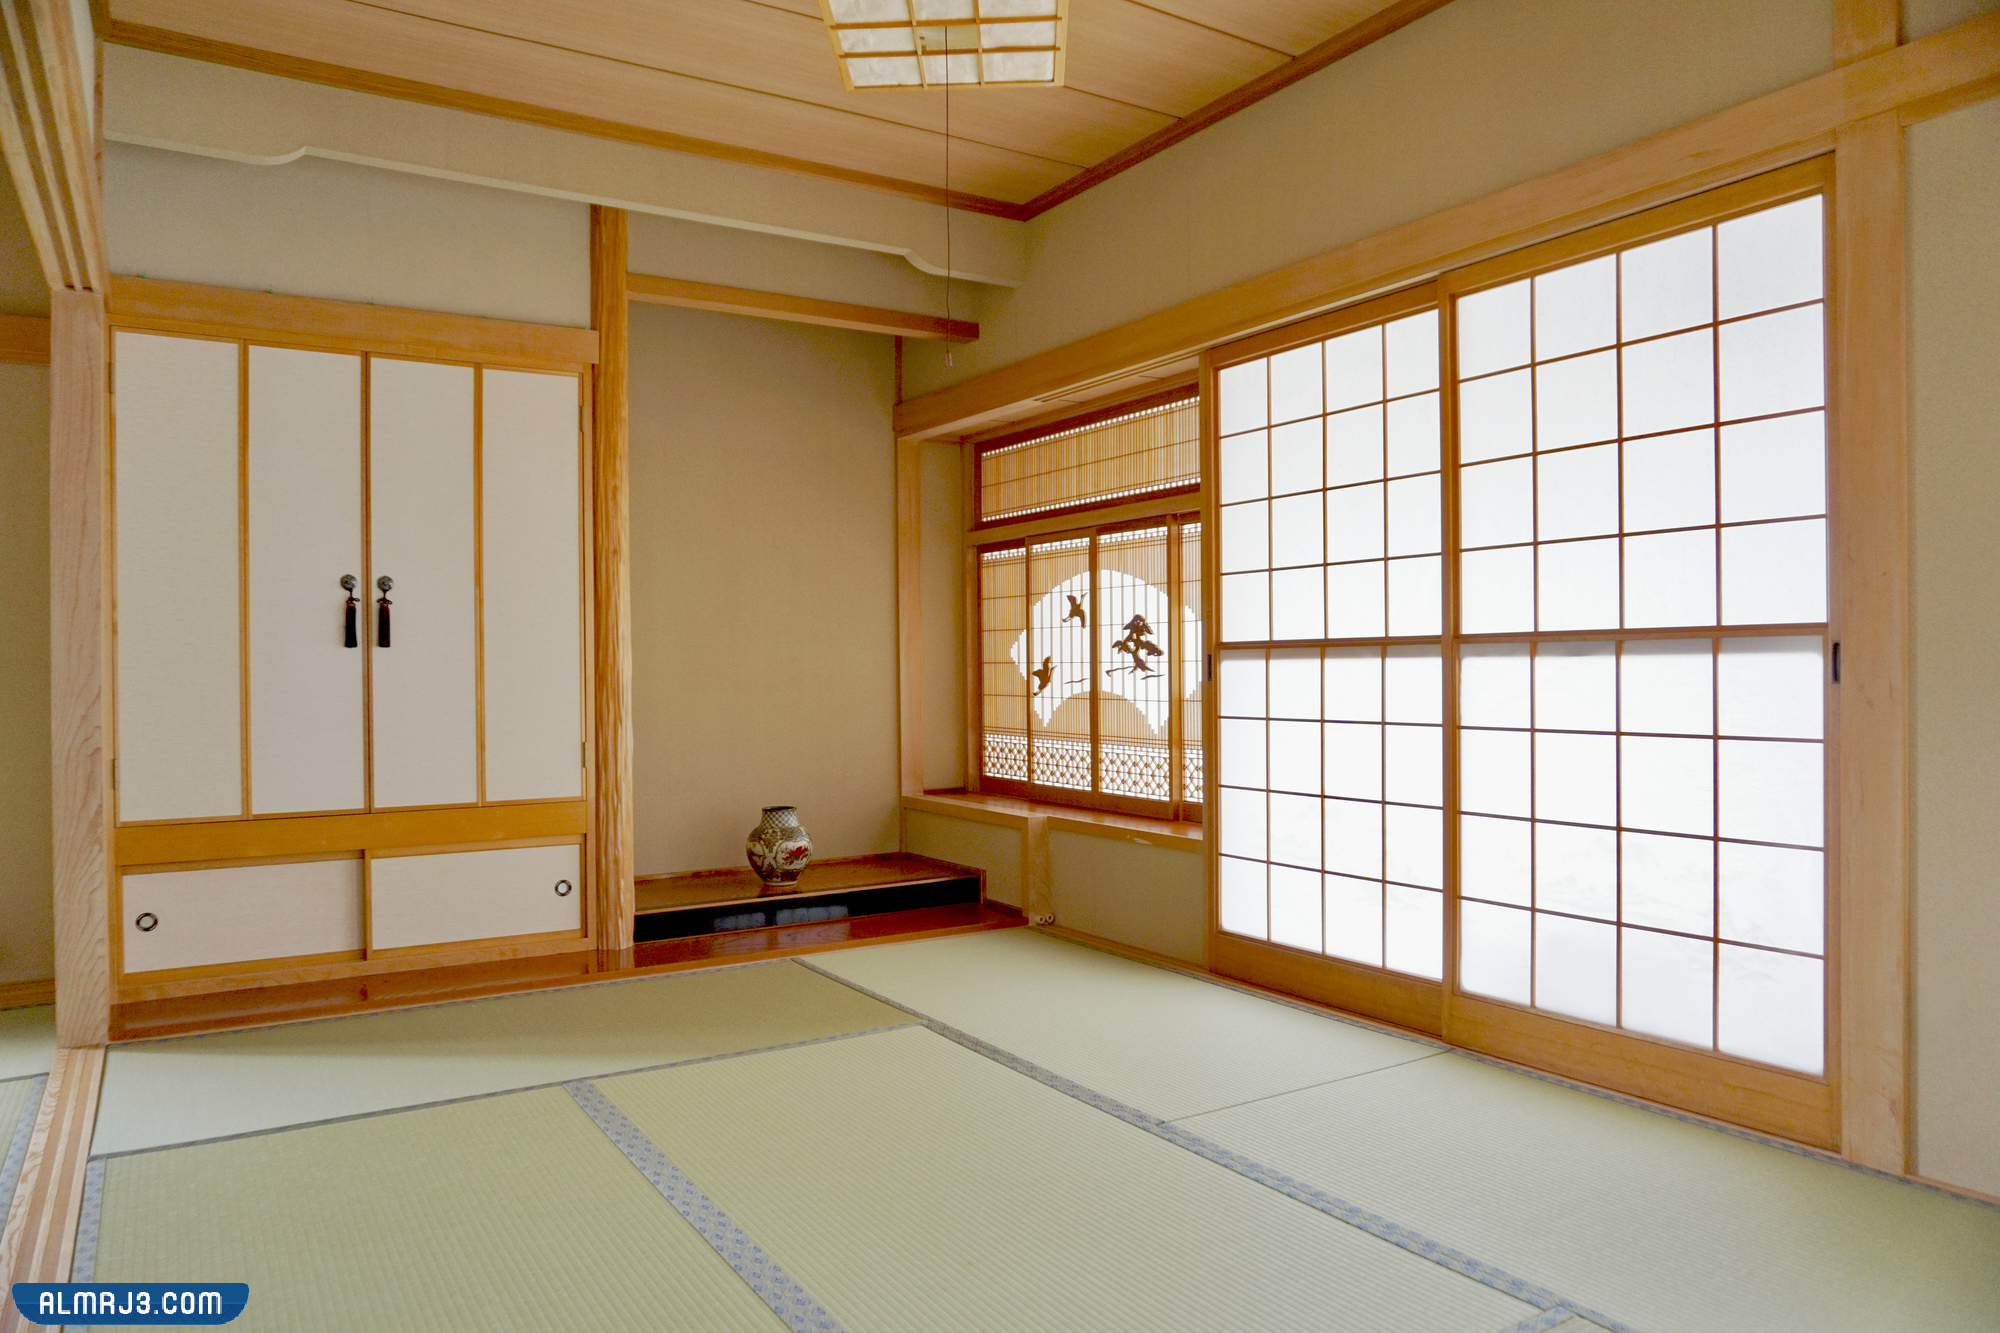  أبواب الغرف الخشبية الحديثة في اليابان